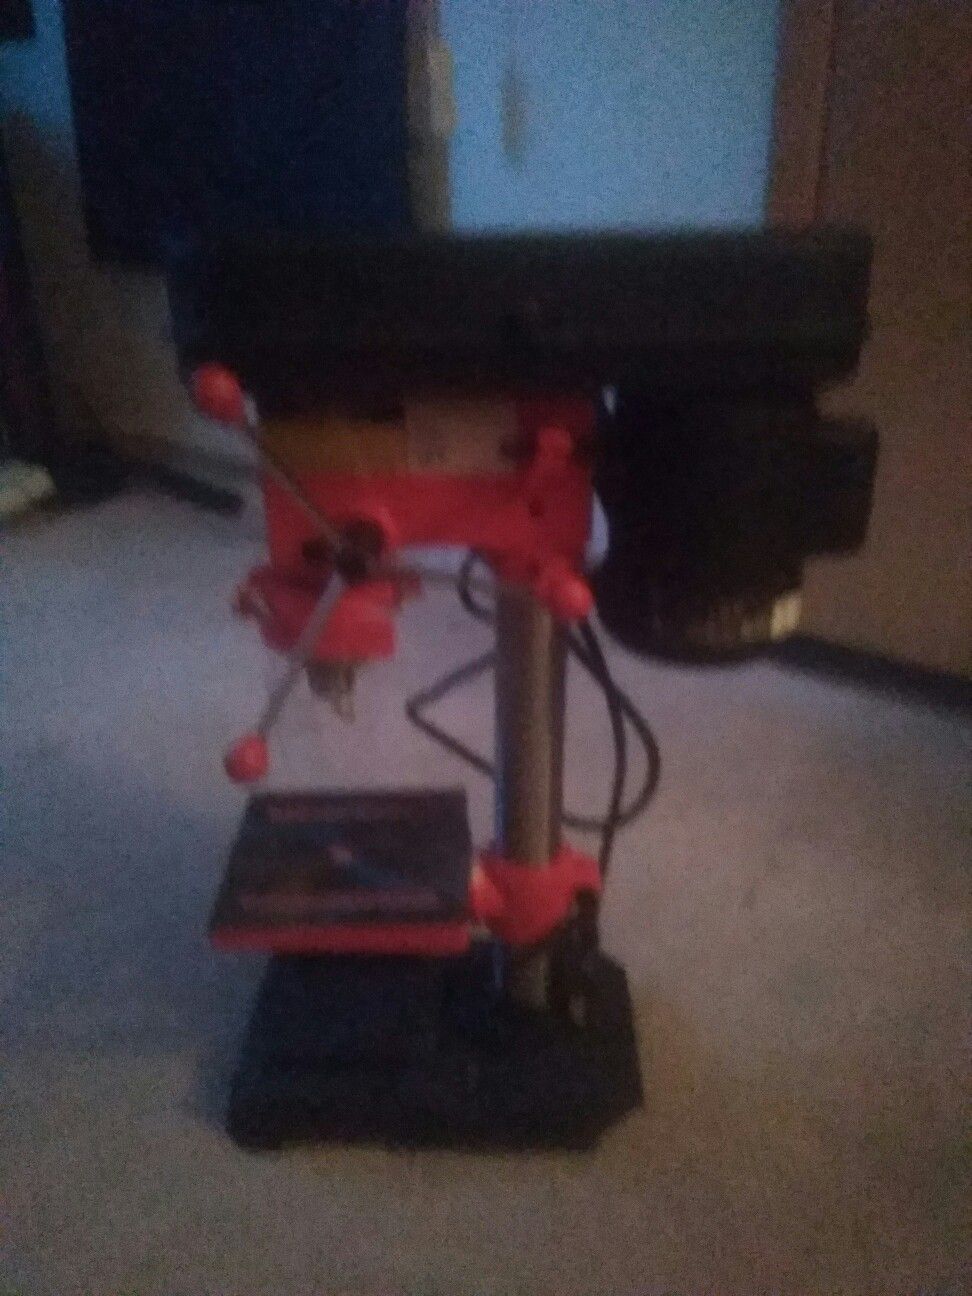 Mini drill press